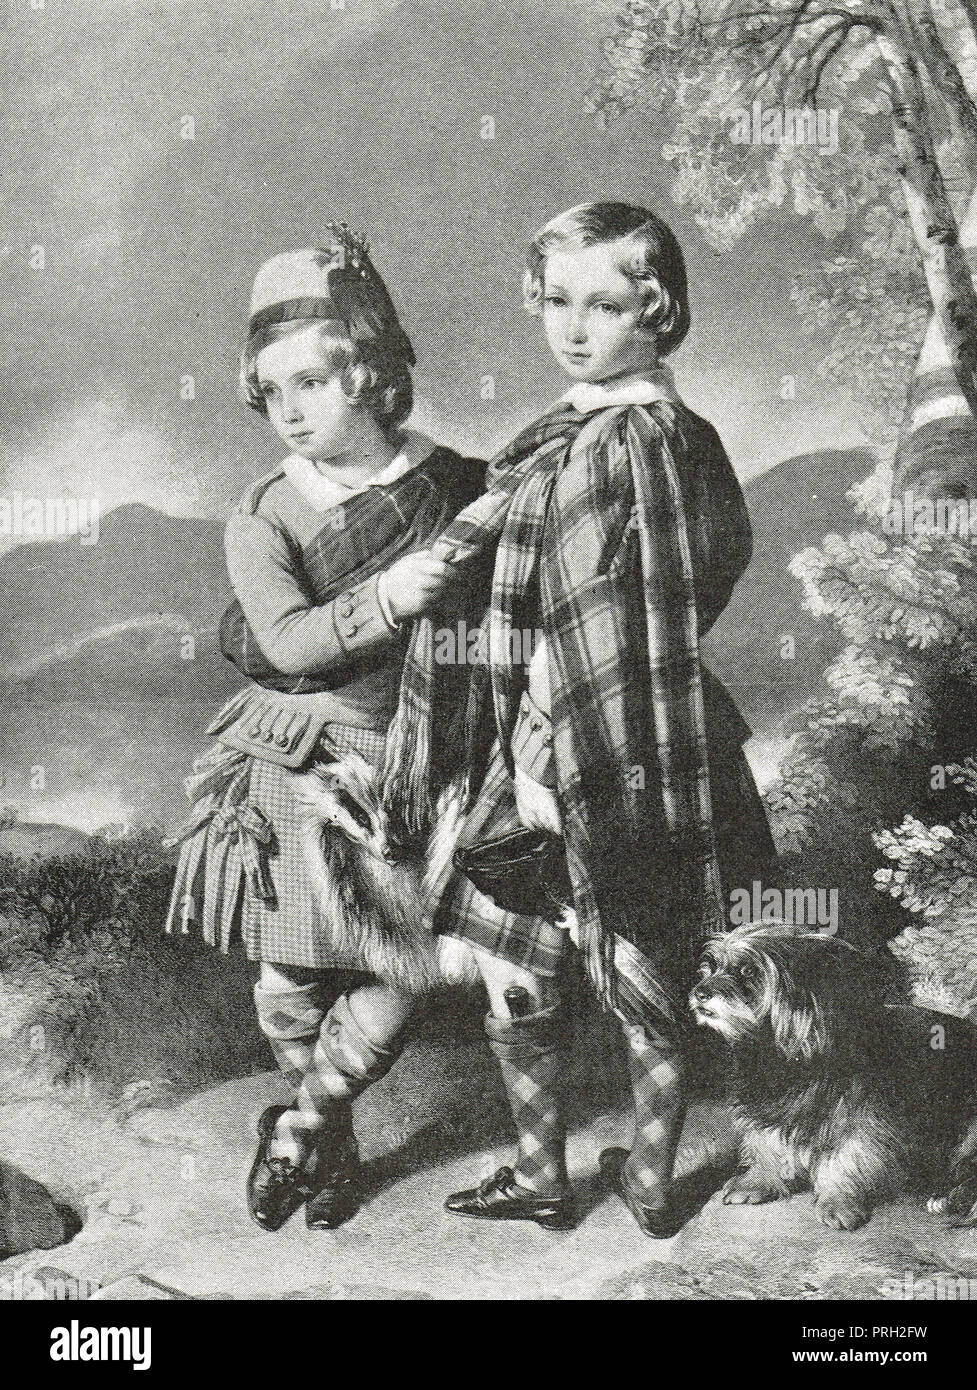 Prince Albert Edward, Principe di Galles, futuro re Edoardo VII, con il suo fratello più giovane Alfred, in highland dress, nel 1849 Foto Stock